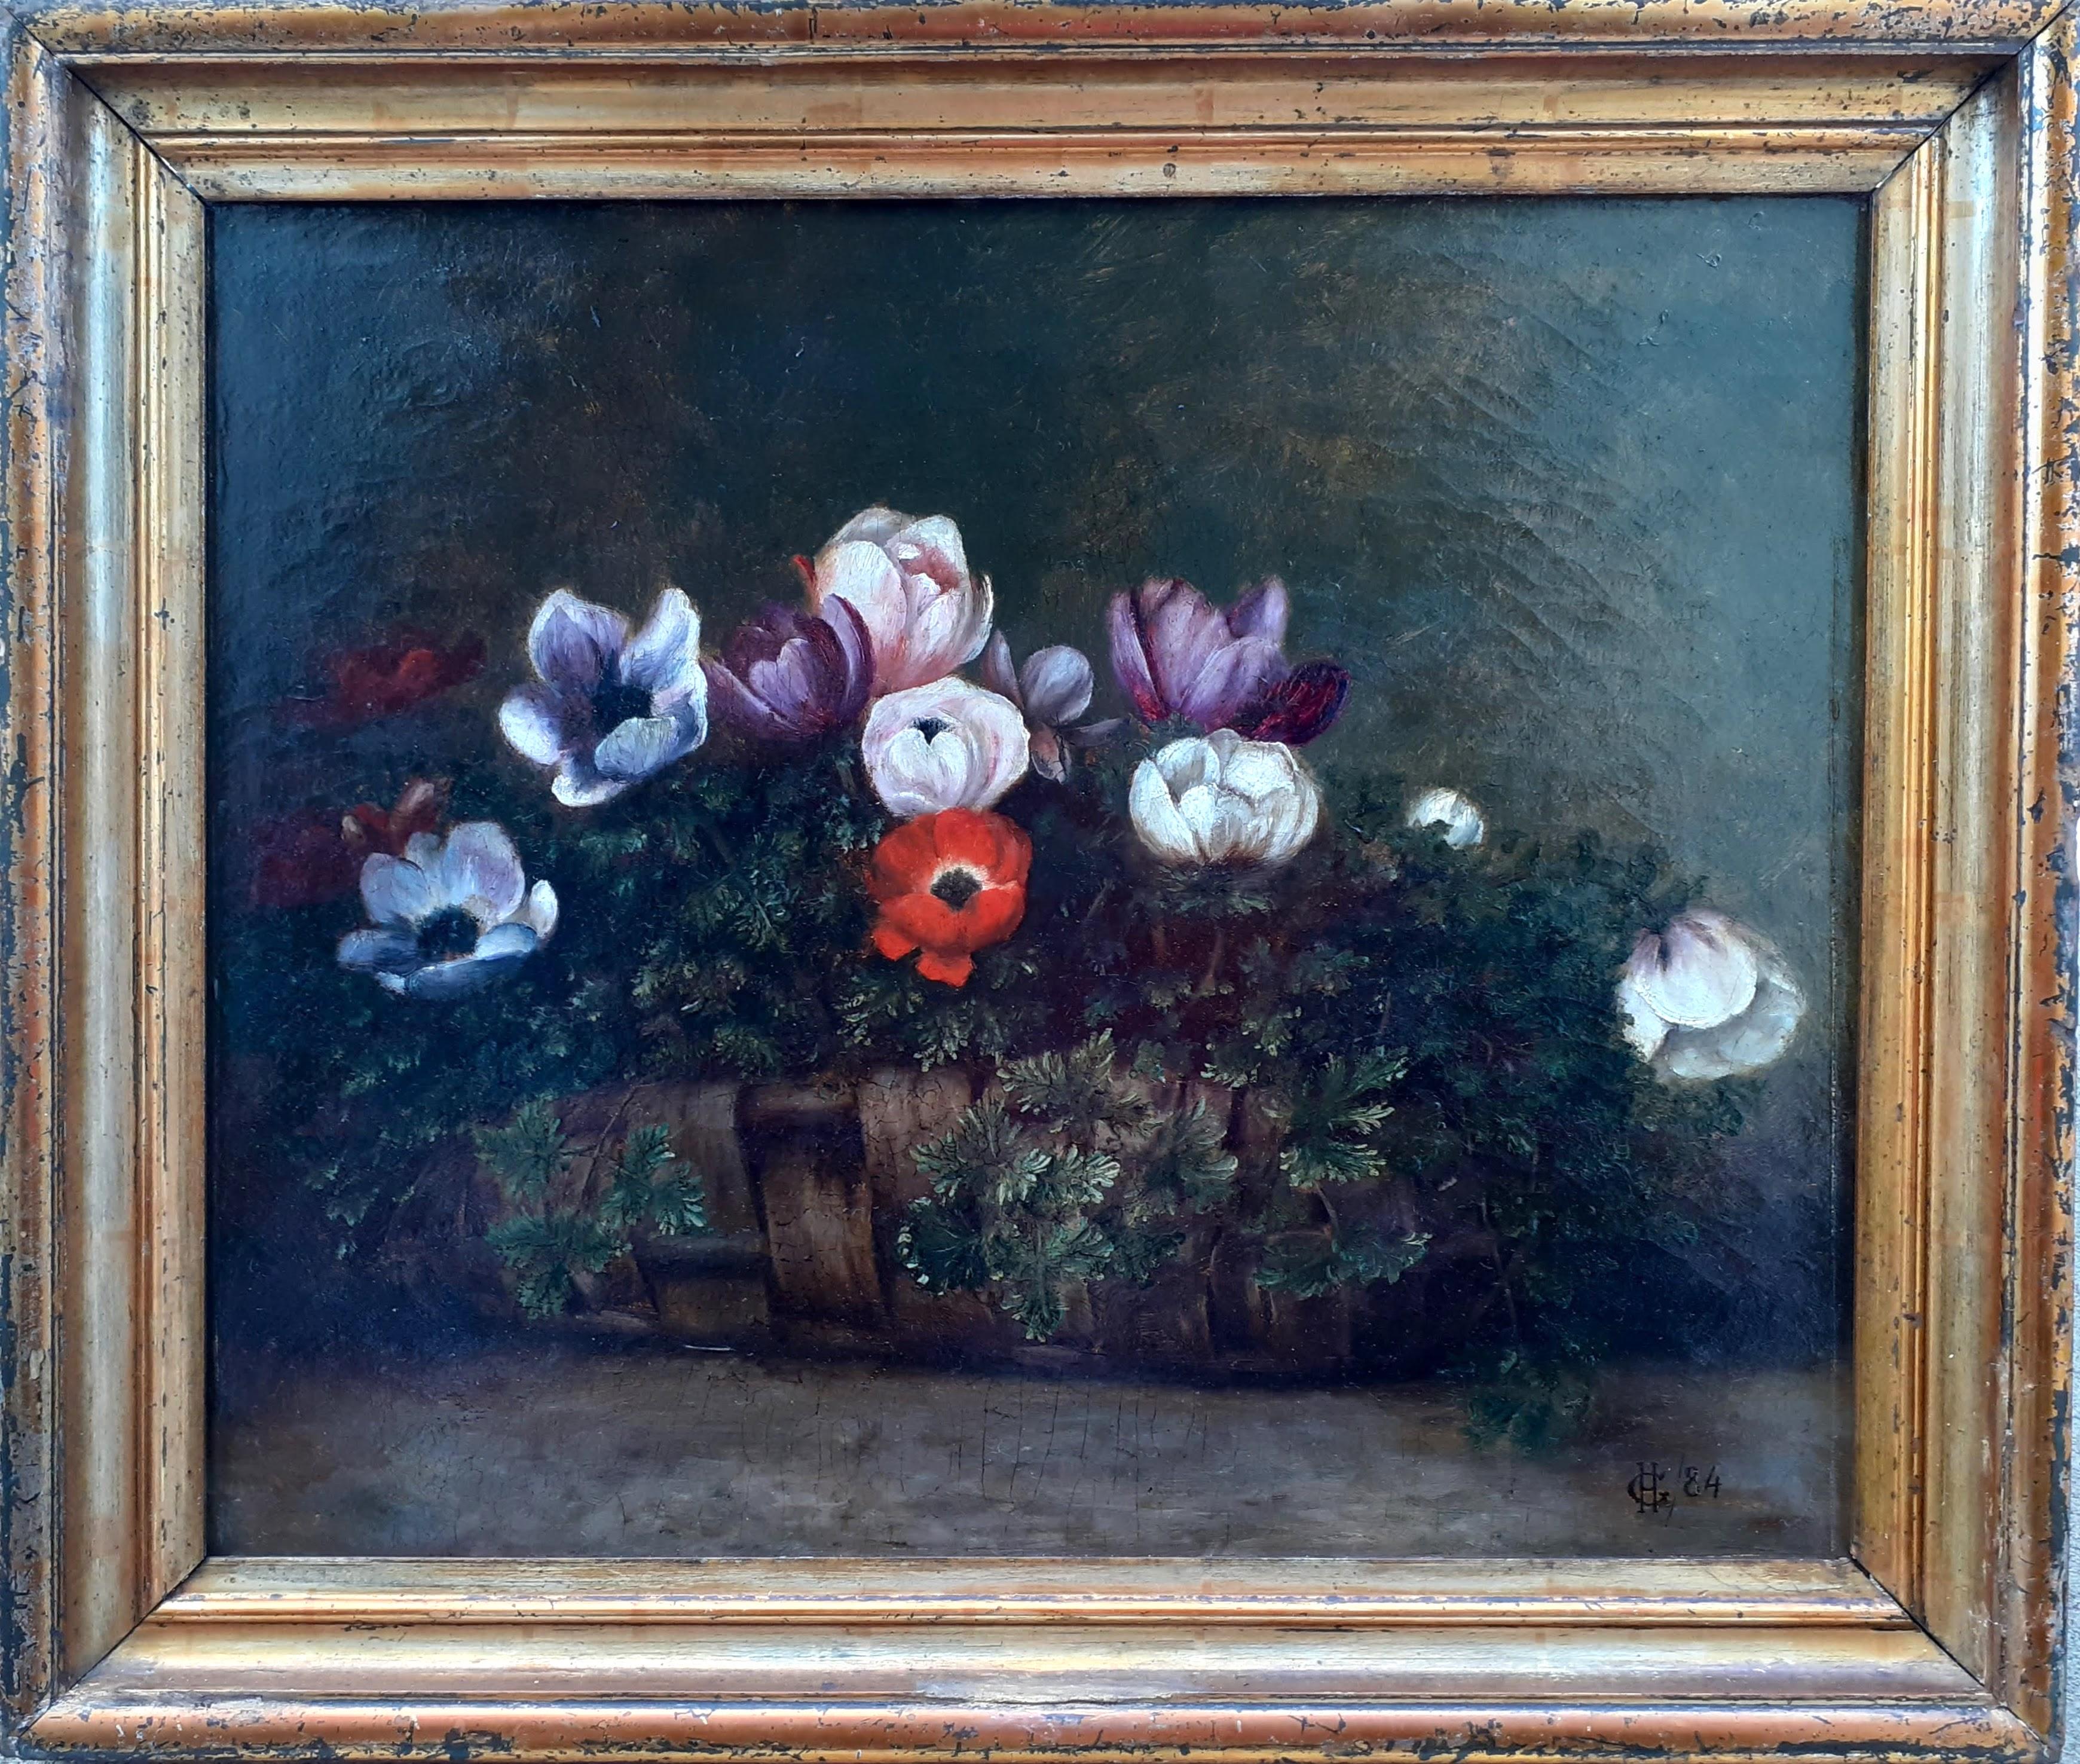 Unknown Figurative Painting – Korb aus Korbweide mit Anhängern, ein bescheidenes Festliches Geschenk, Blumenstillleben aus dem 19. Jahrhundert